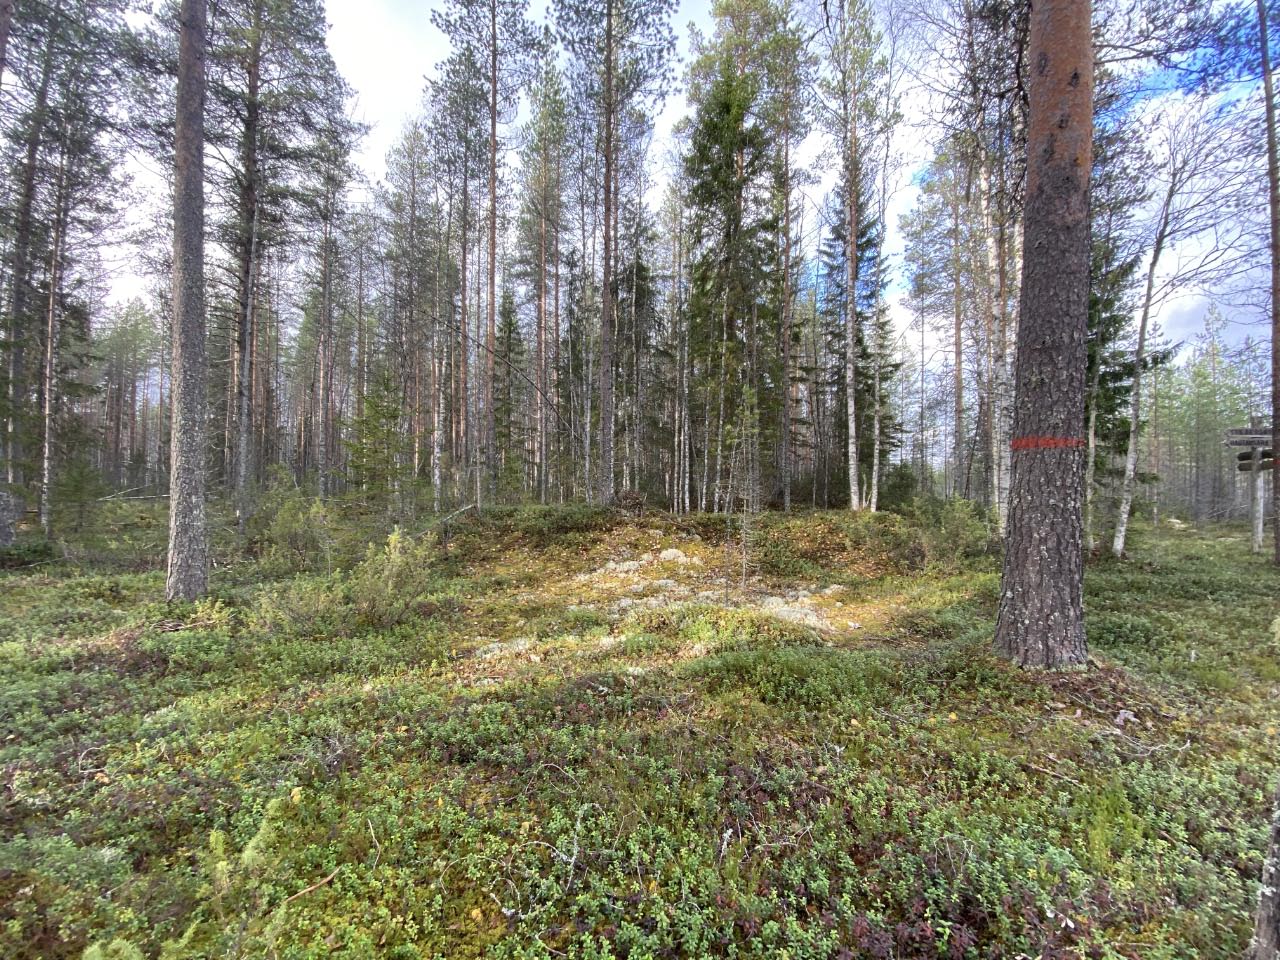 Kuva: Miilunpohja 2 erottuu selkeänä rengasmaisena vallina maastossa. Kuopion kulttuurihistoriallinen museo. CC BY 4.0 Tytti Räikkönen 9.10.2020